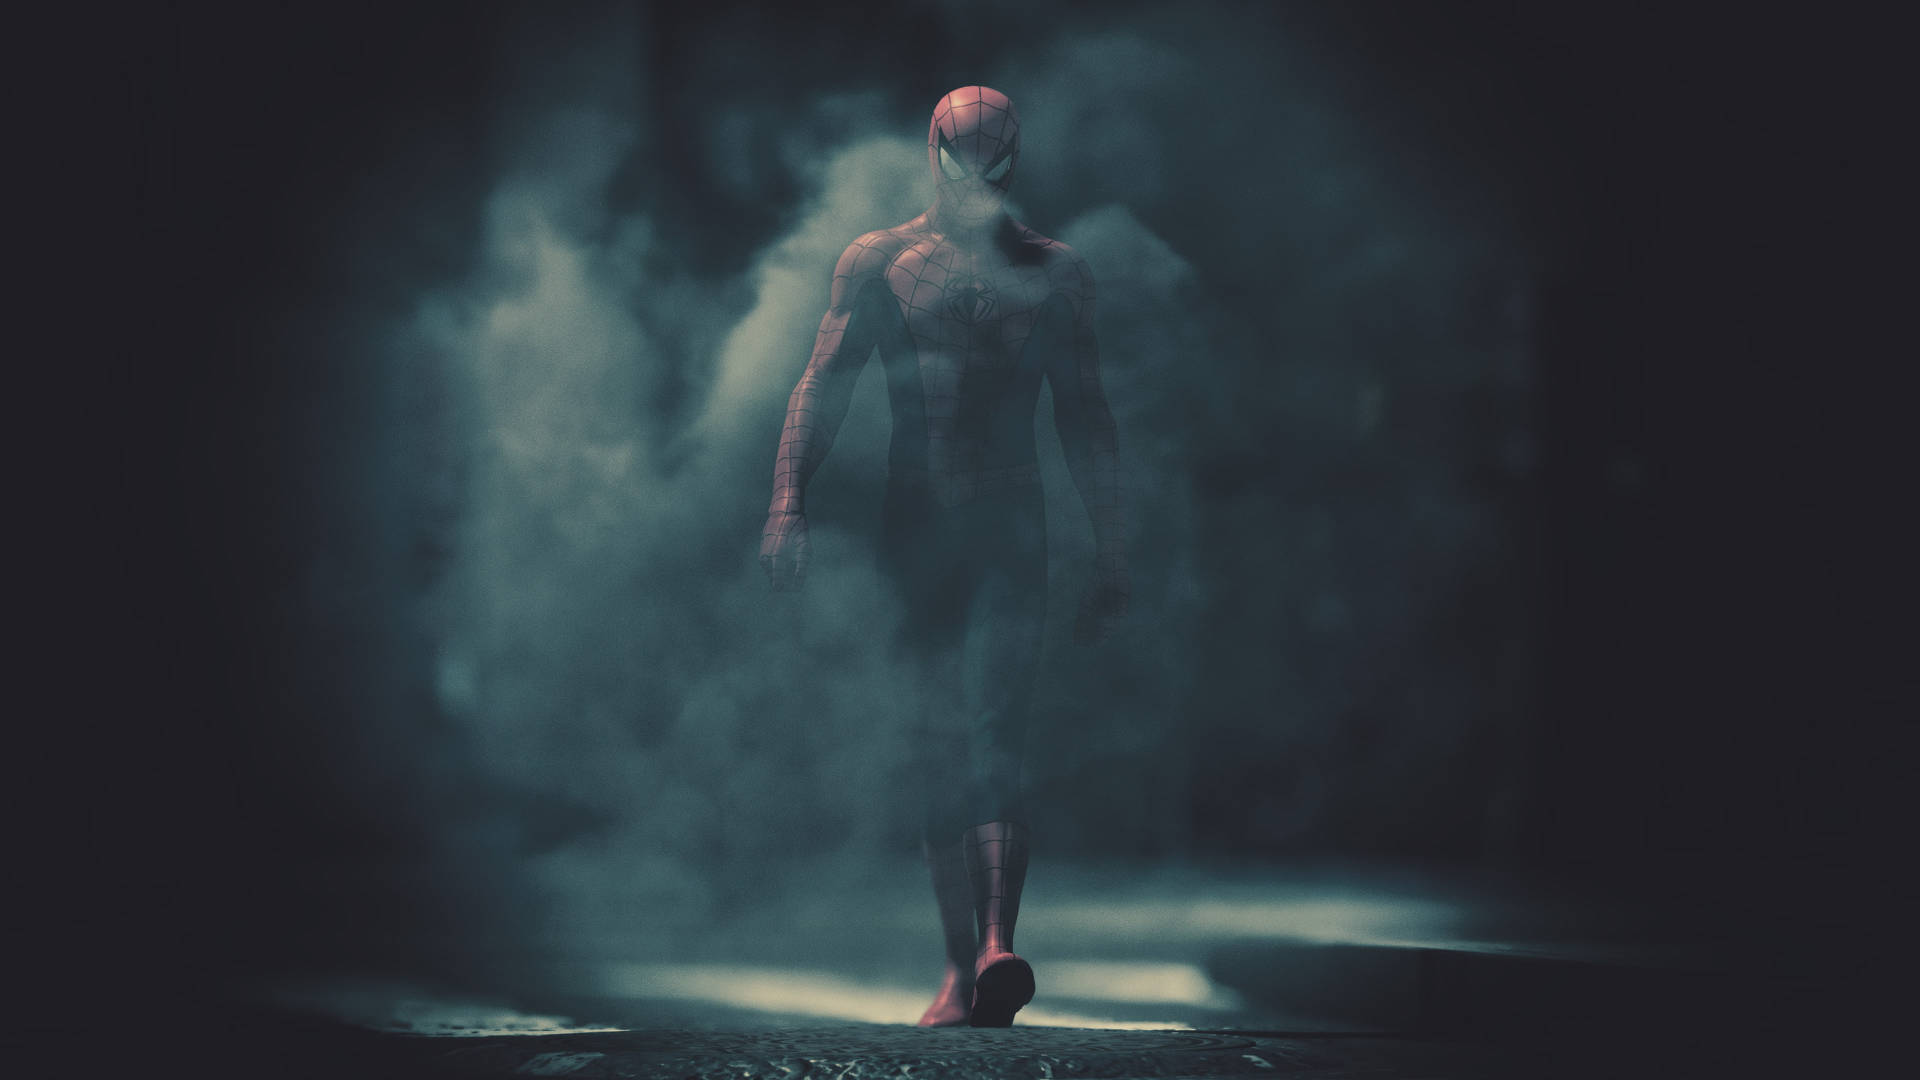 Spider-man Walking Through Smoke 1080p Gaming Background